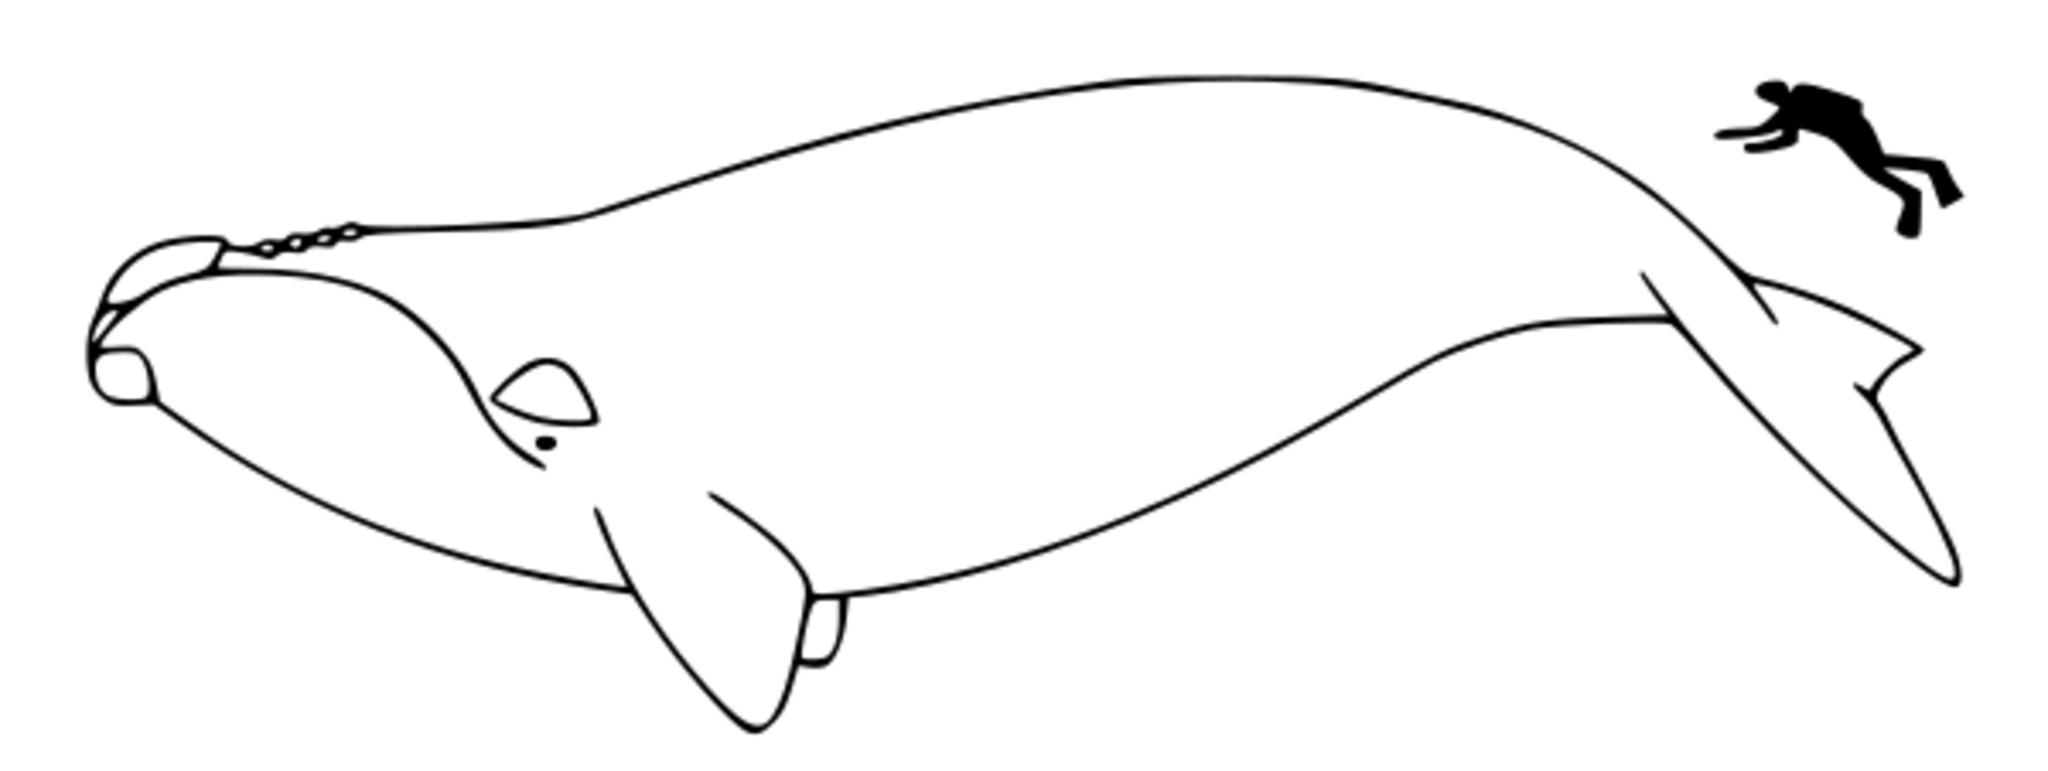 Японский гладкий кит раскраска